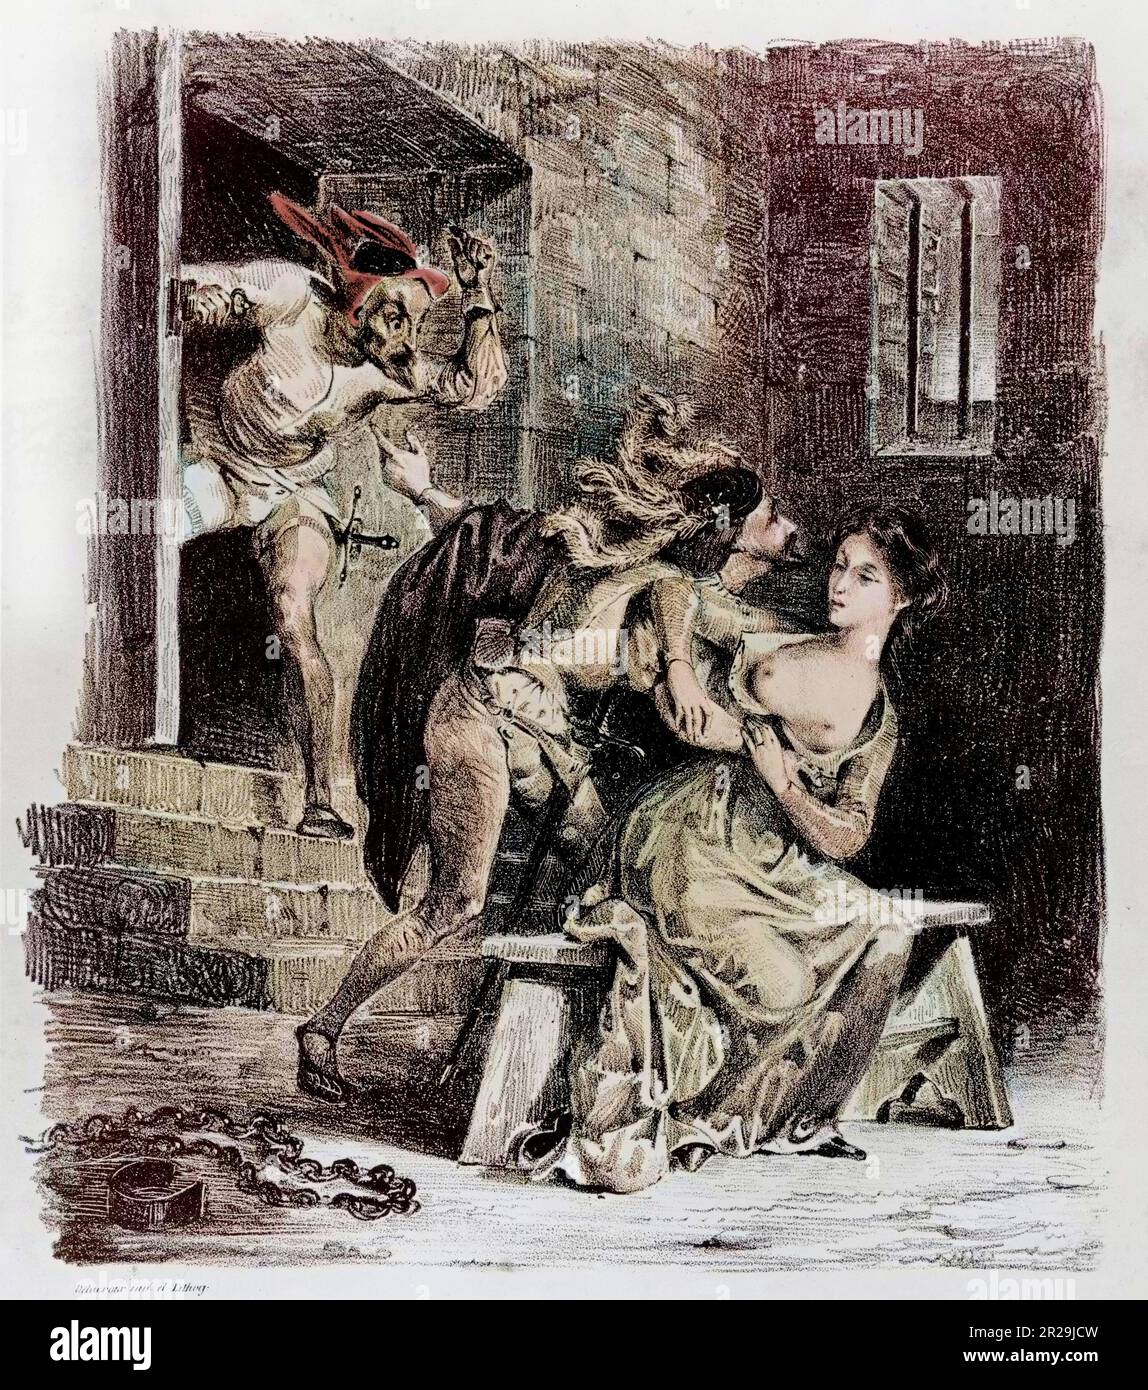 Albert Stapfer Illustration d'Eugene Delacroix (colorie ulterieurement) Chez C. Motte et Sautelet (Paris), 1828 Foto Stock